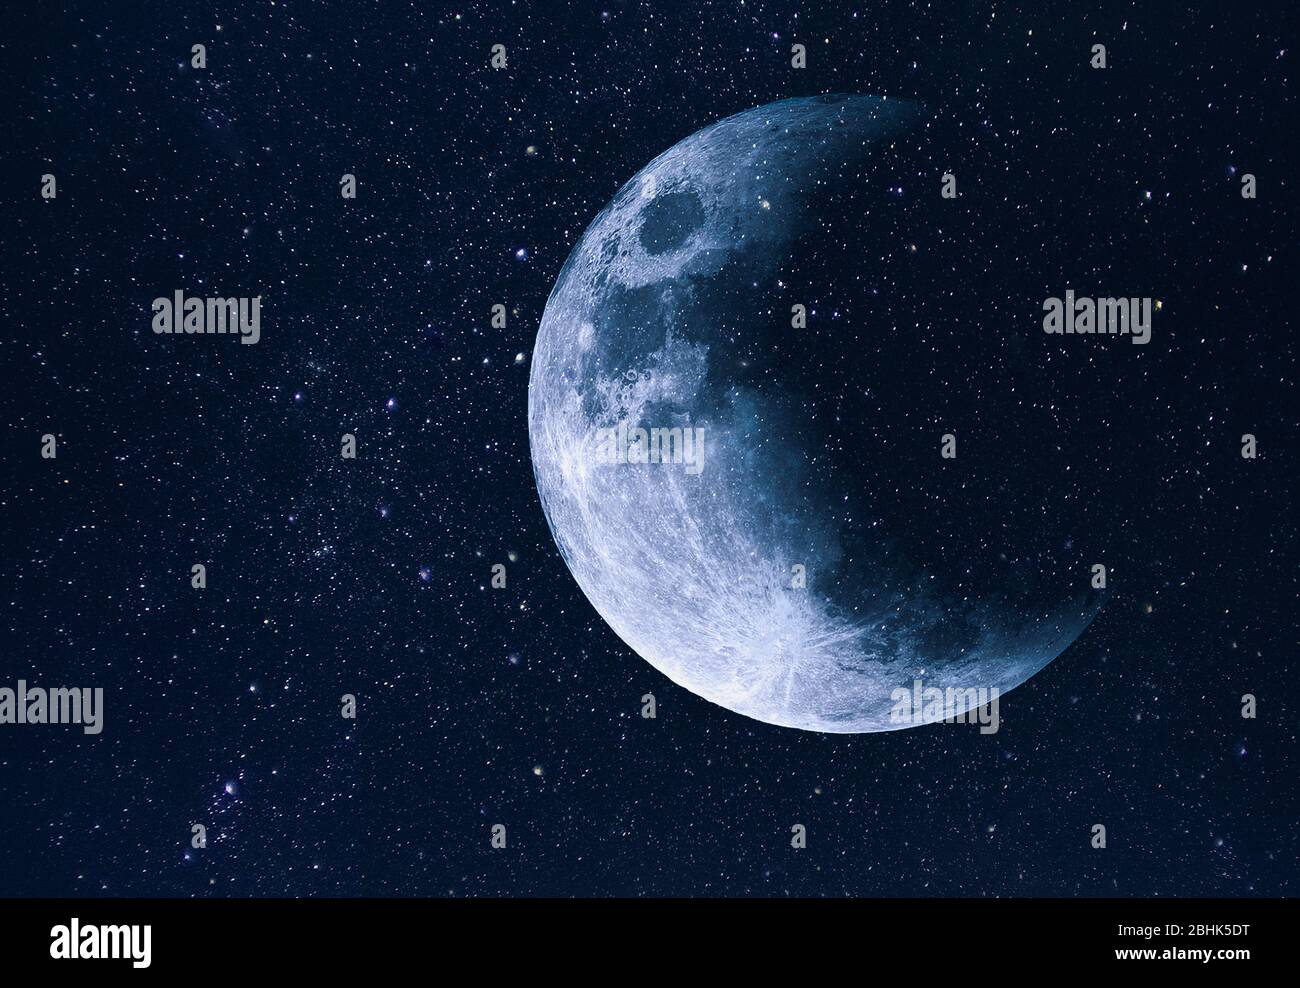 Espacio increíble, cielo con estrellas y luna durante el eclipse, fondo Foto de stock